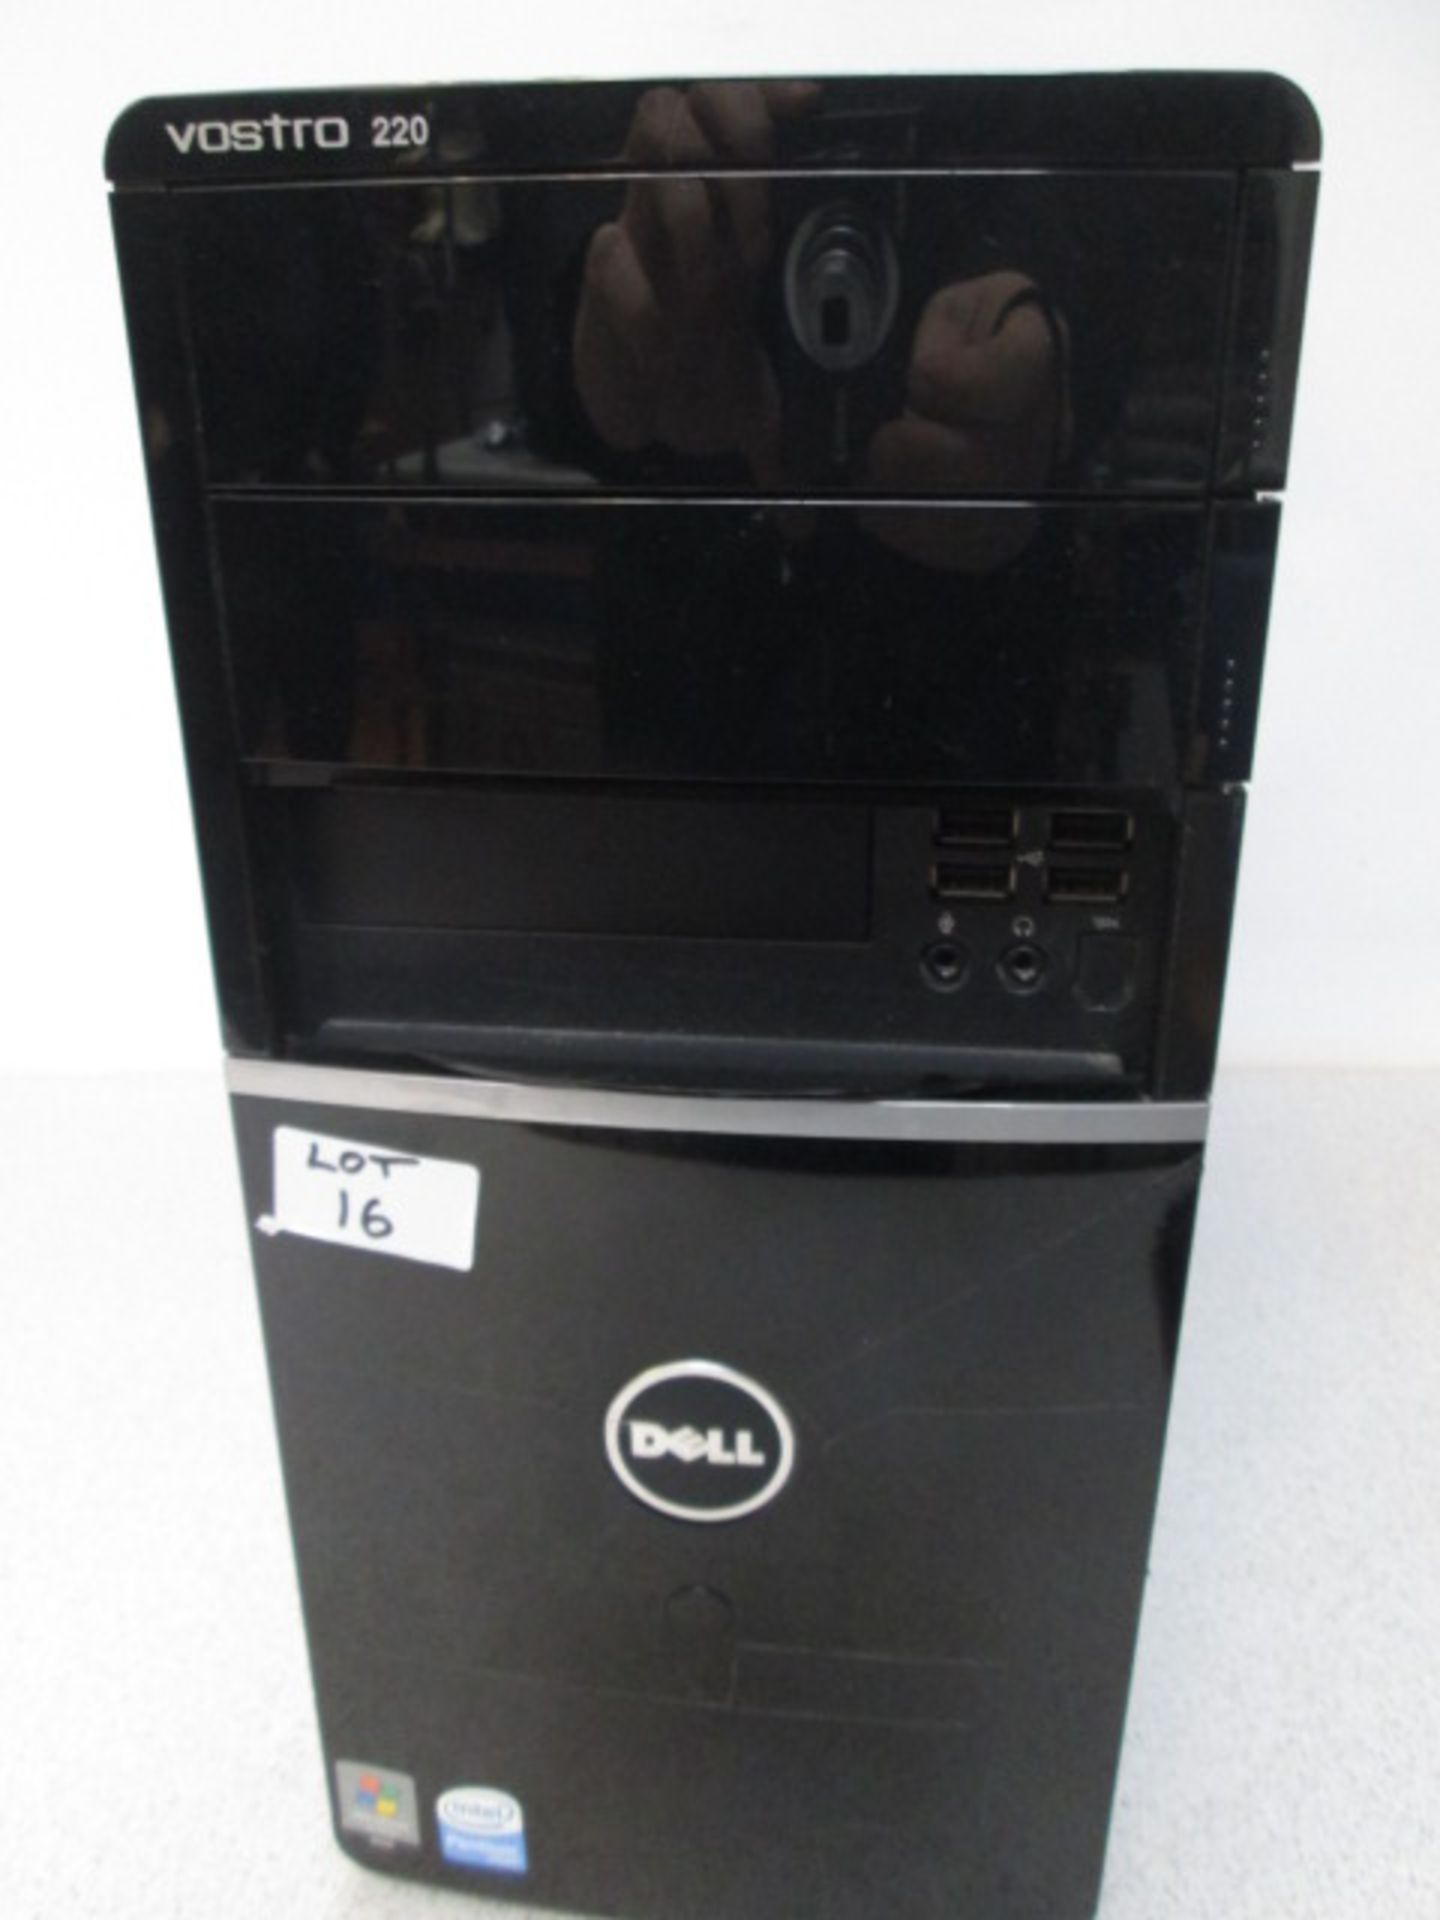 Dell Vostro 220 Tower PC, Intel Pentium Dual Core Processor, CPU E5200 @ 250 GHZ, 232 HDD, 2GB - Image 2 of 2